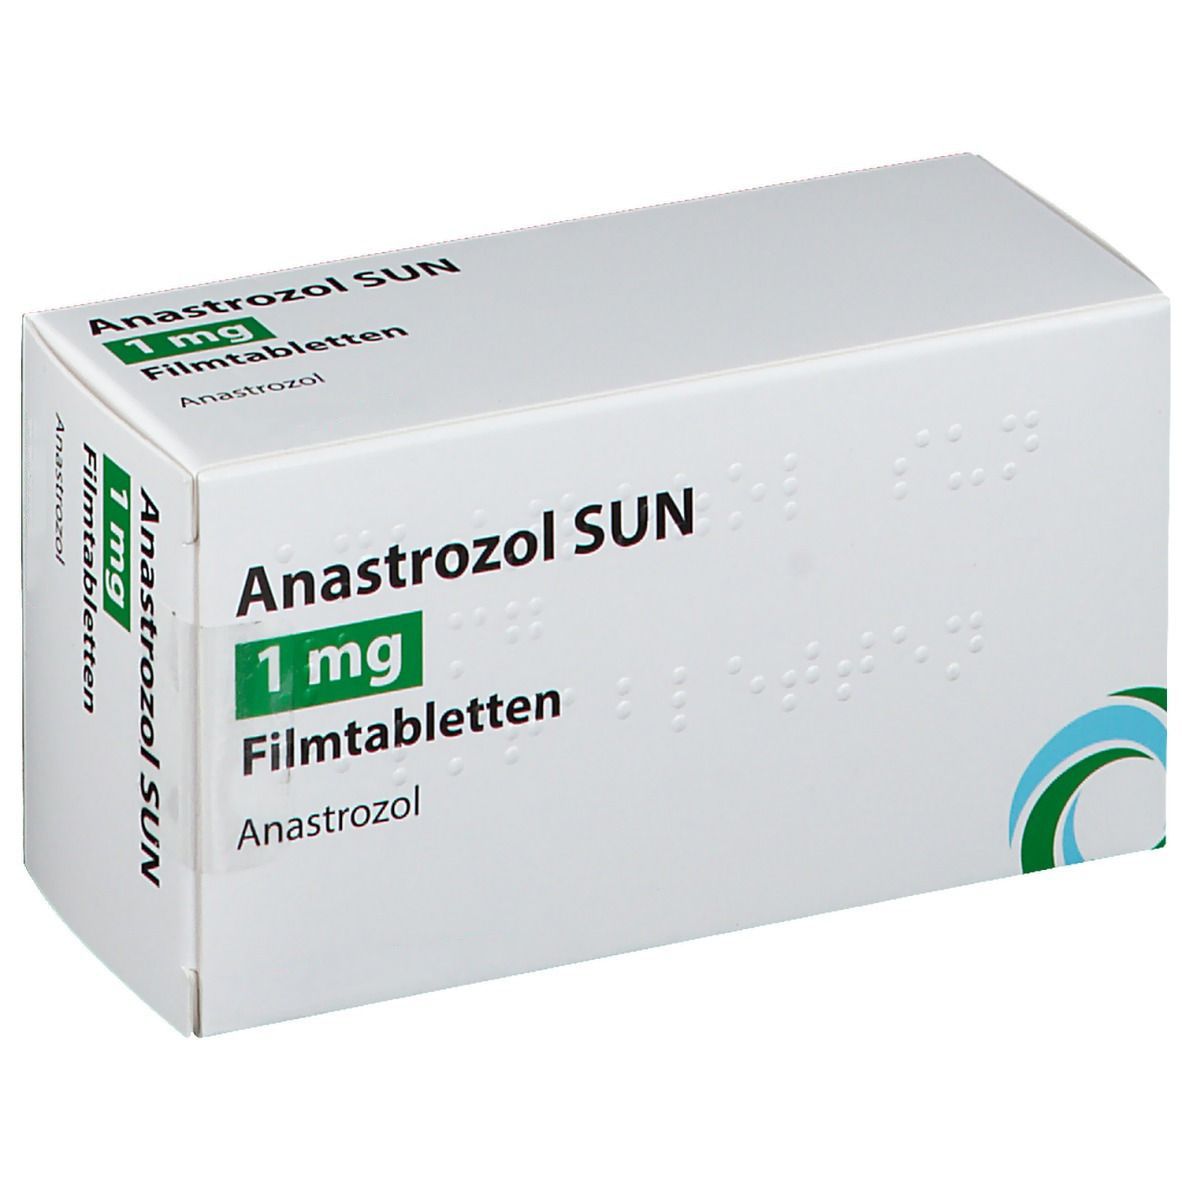 Anastrozol SUN 1 mg